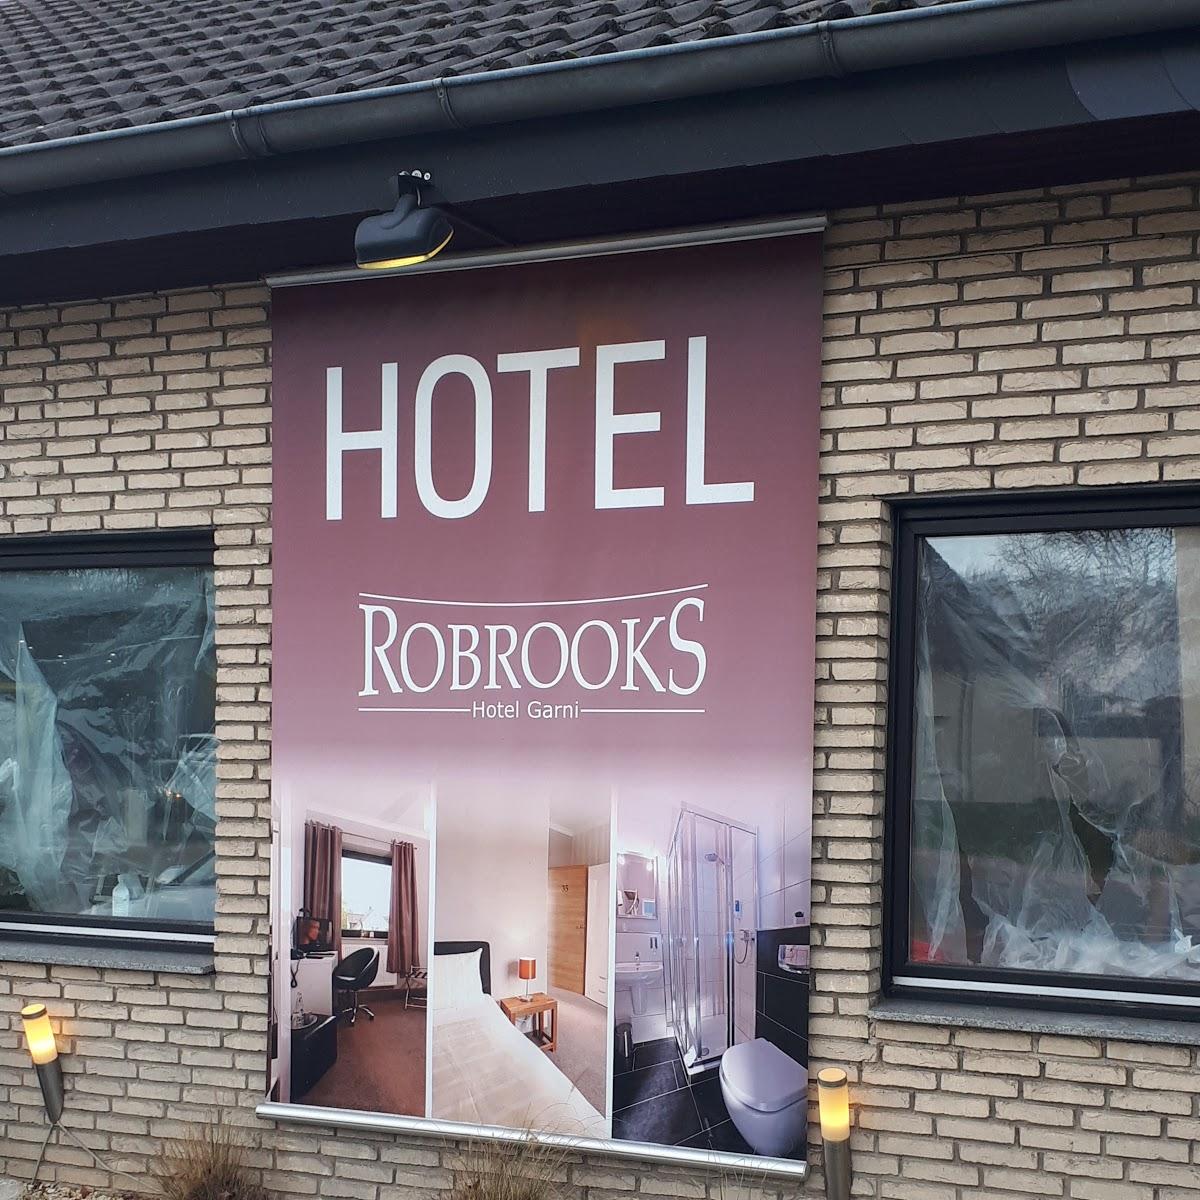 Restaurant "Robrooks" in Hiddenhausen